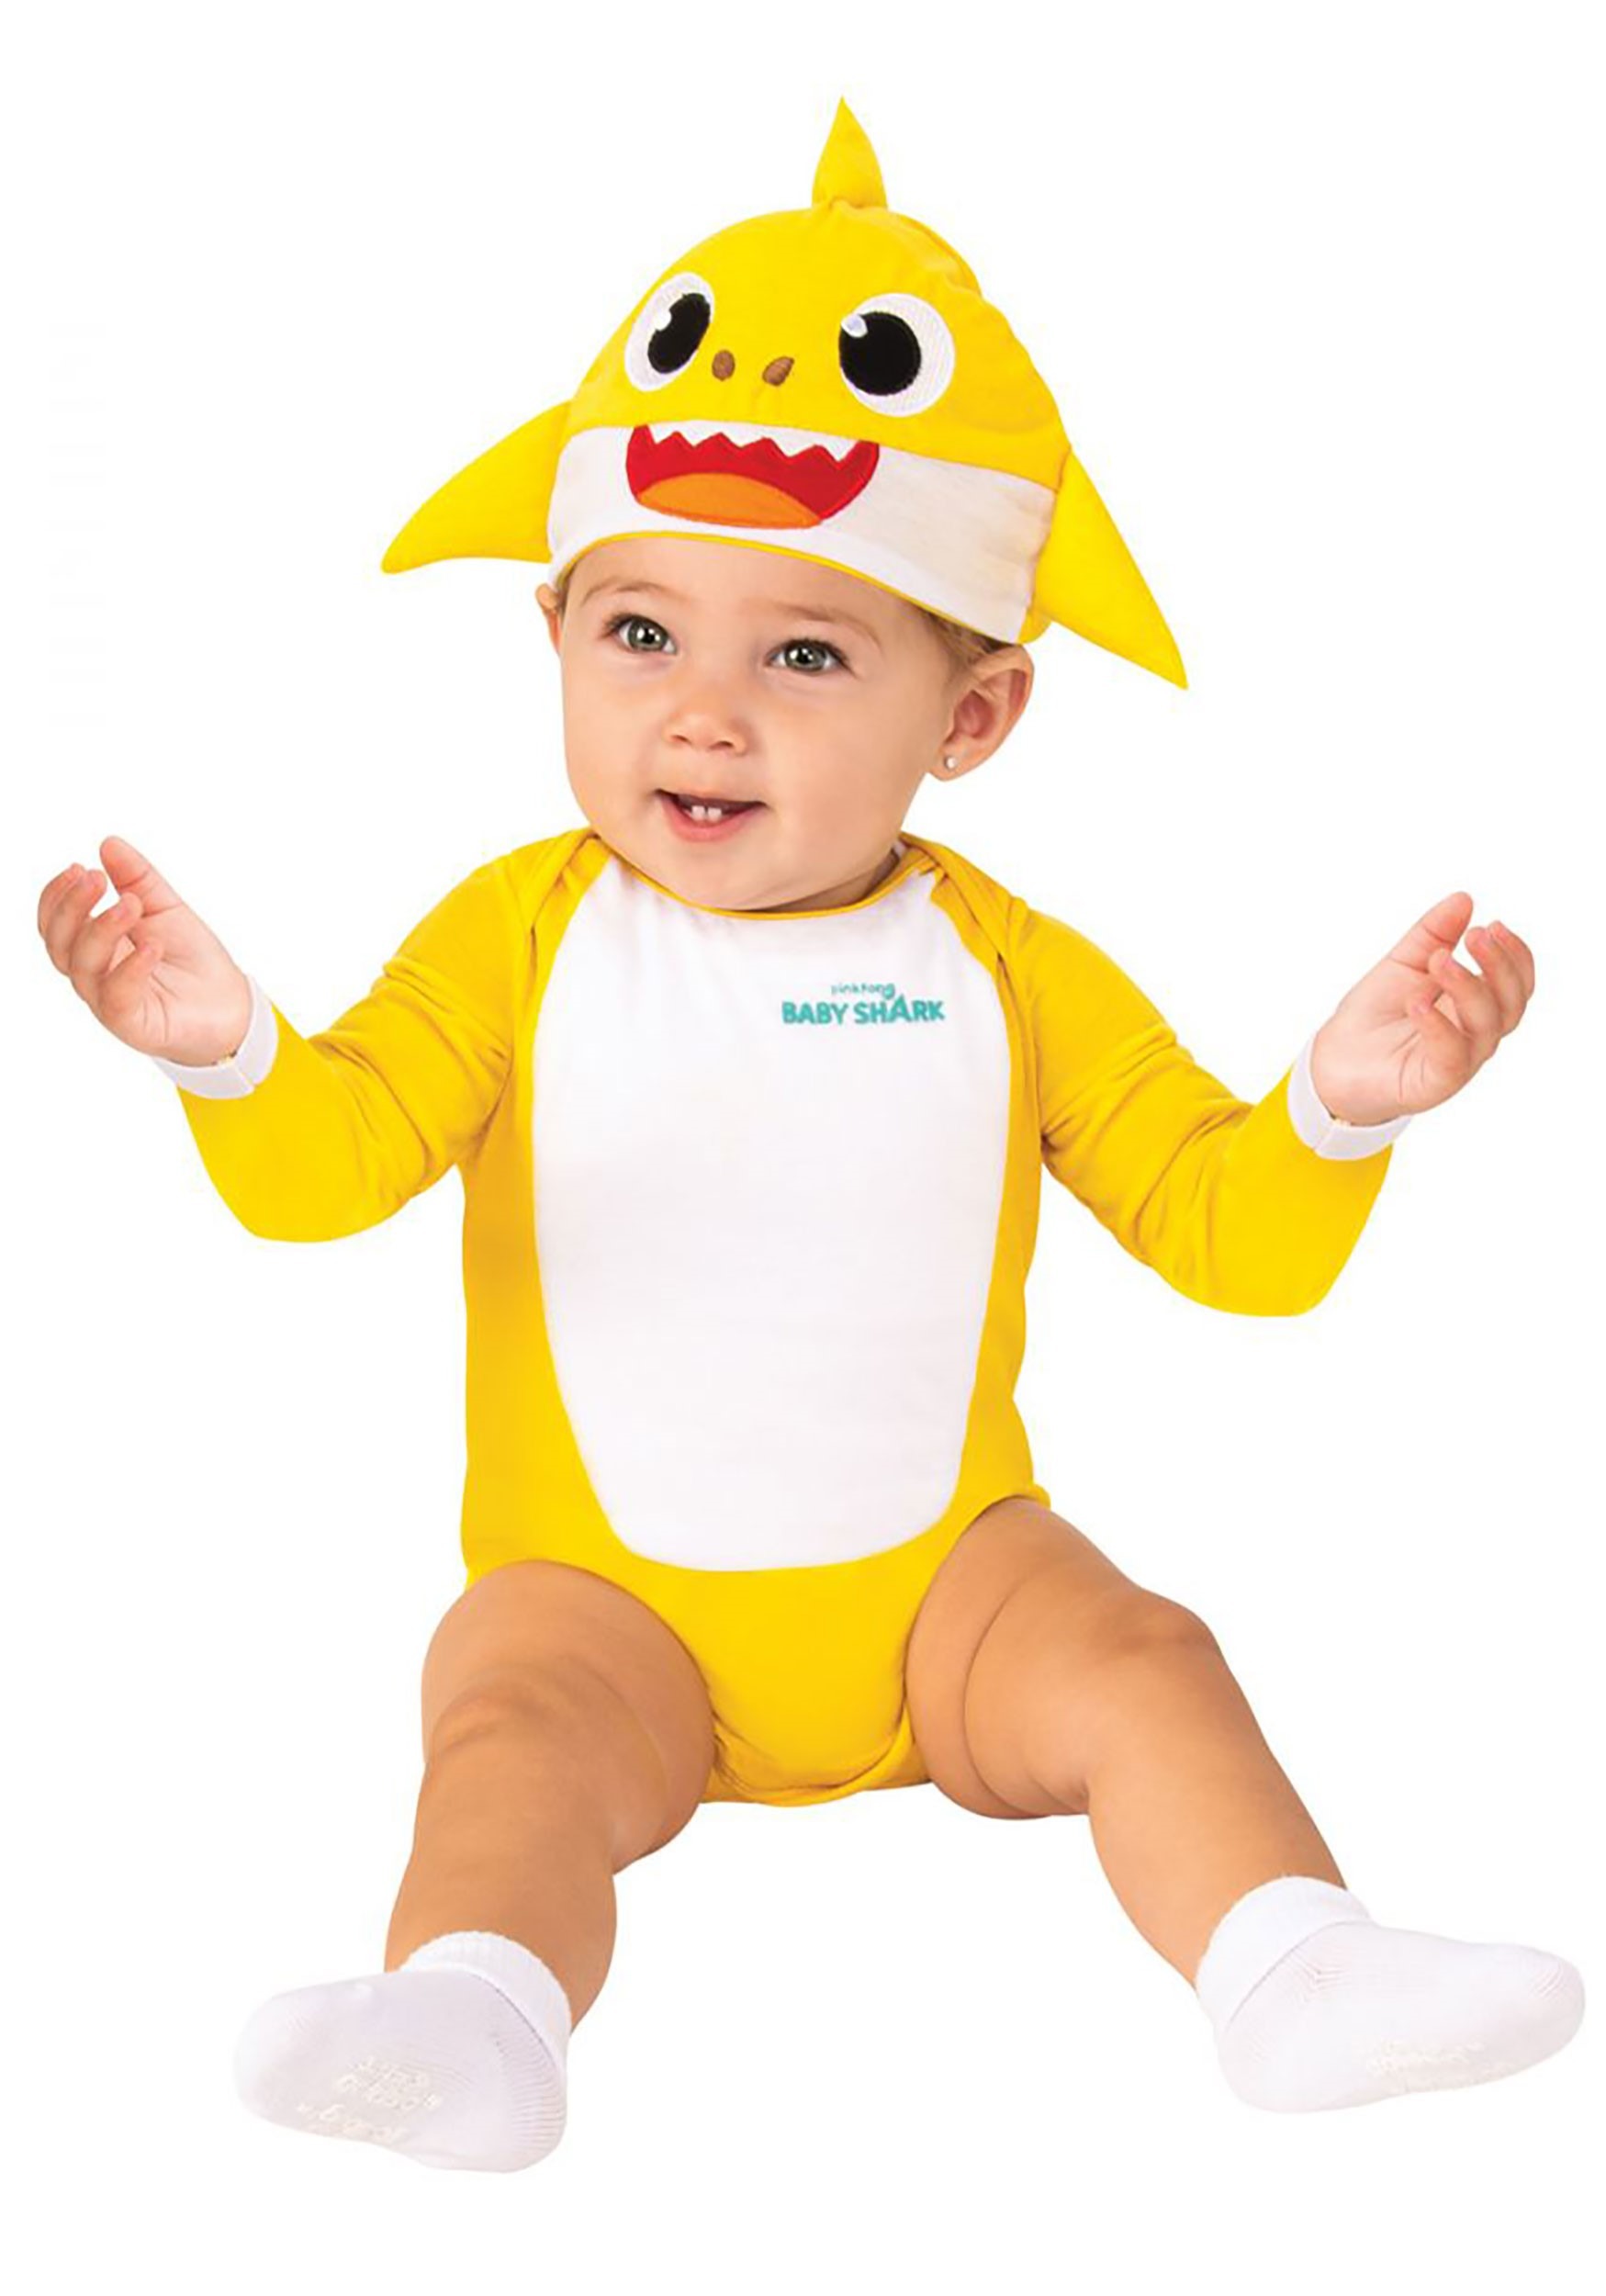 Baby Shark Costume for Infants